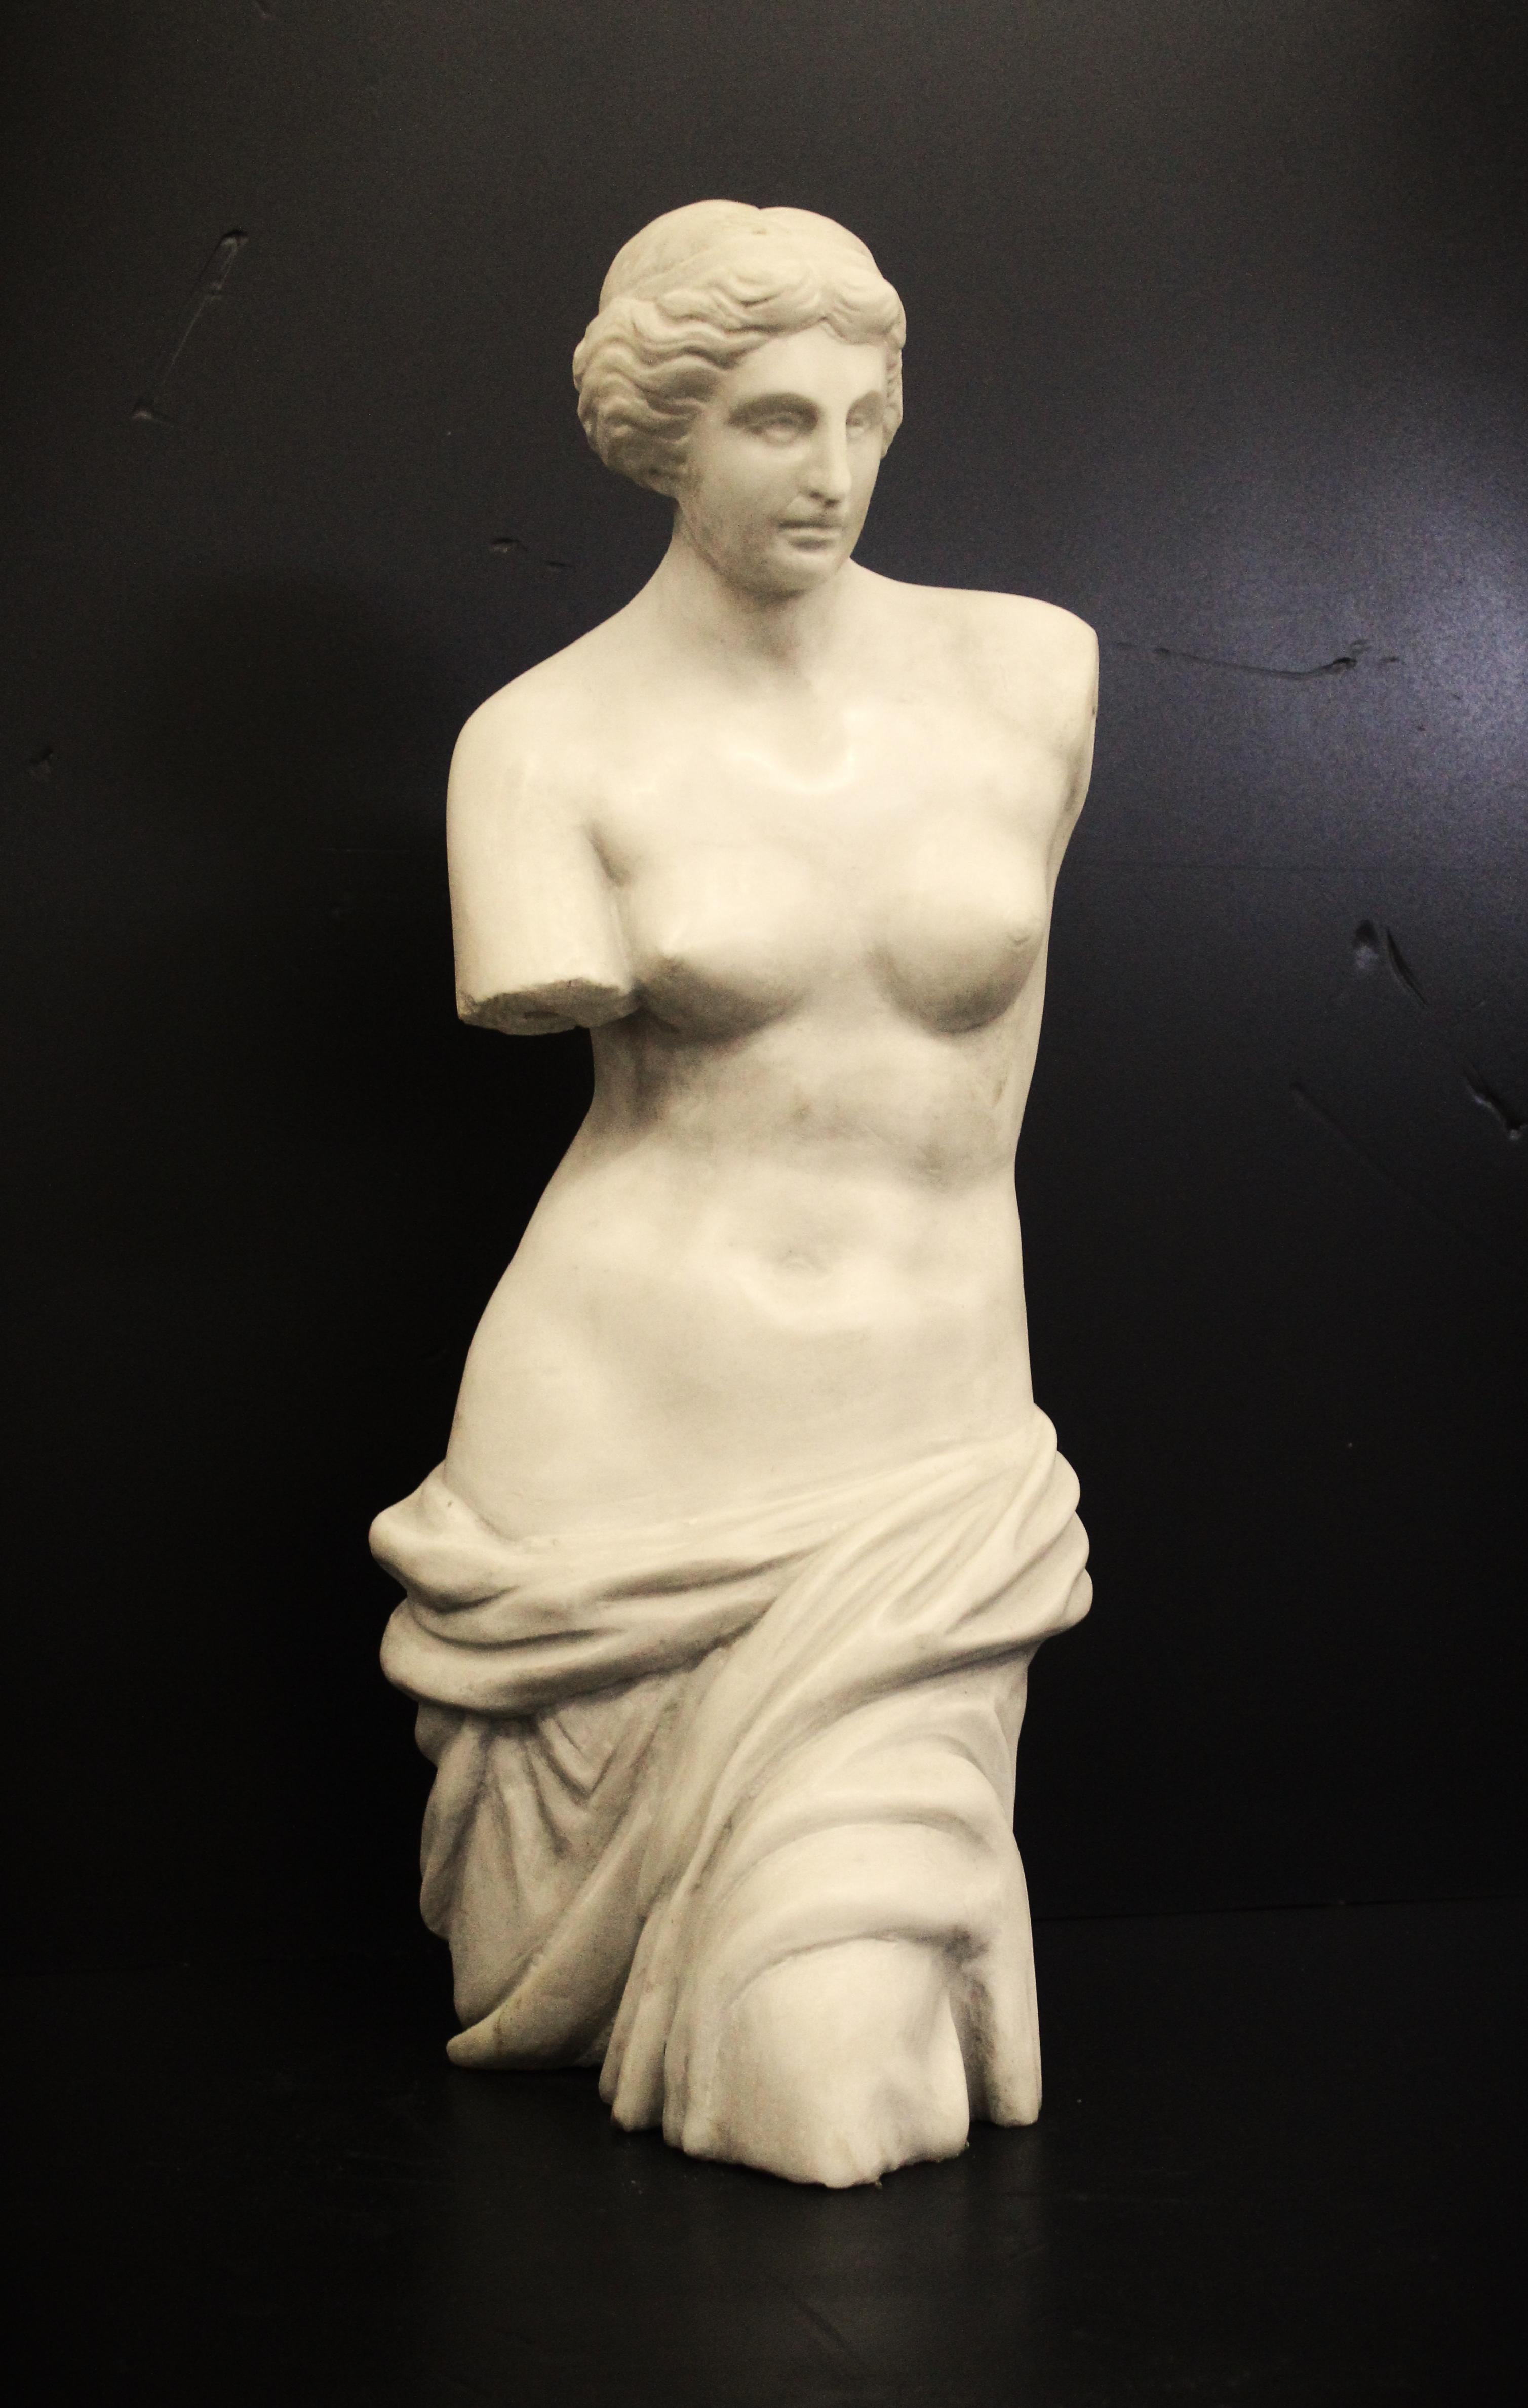 Scultura, Venere di Milo - marmo bianco statuario - 60 cm - Marmo - XX secolo.

